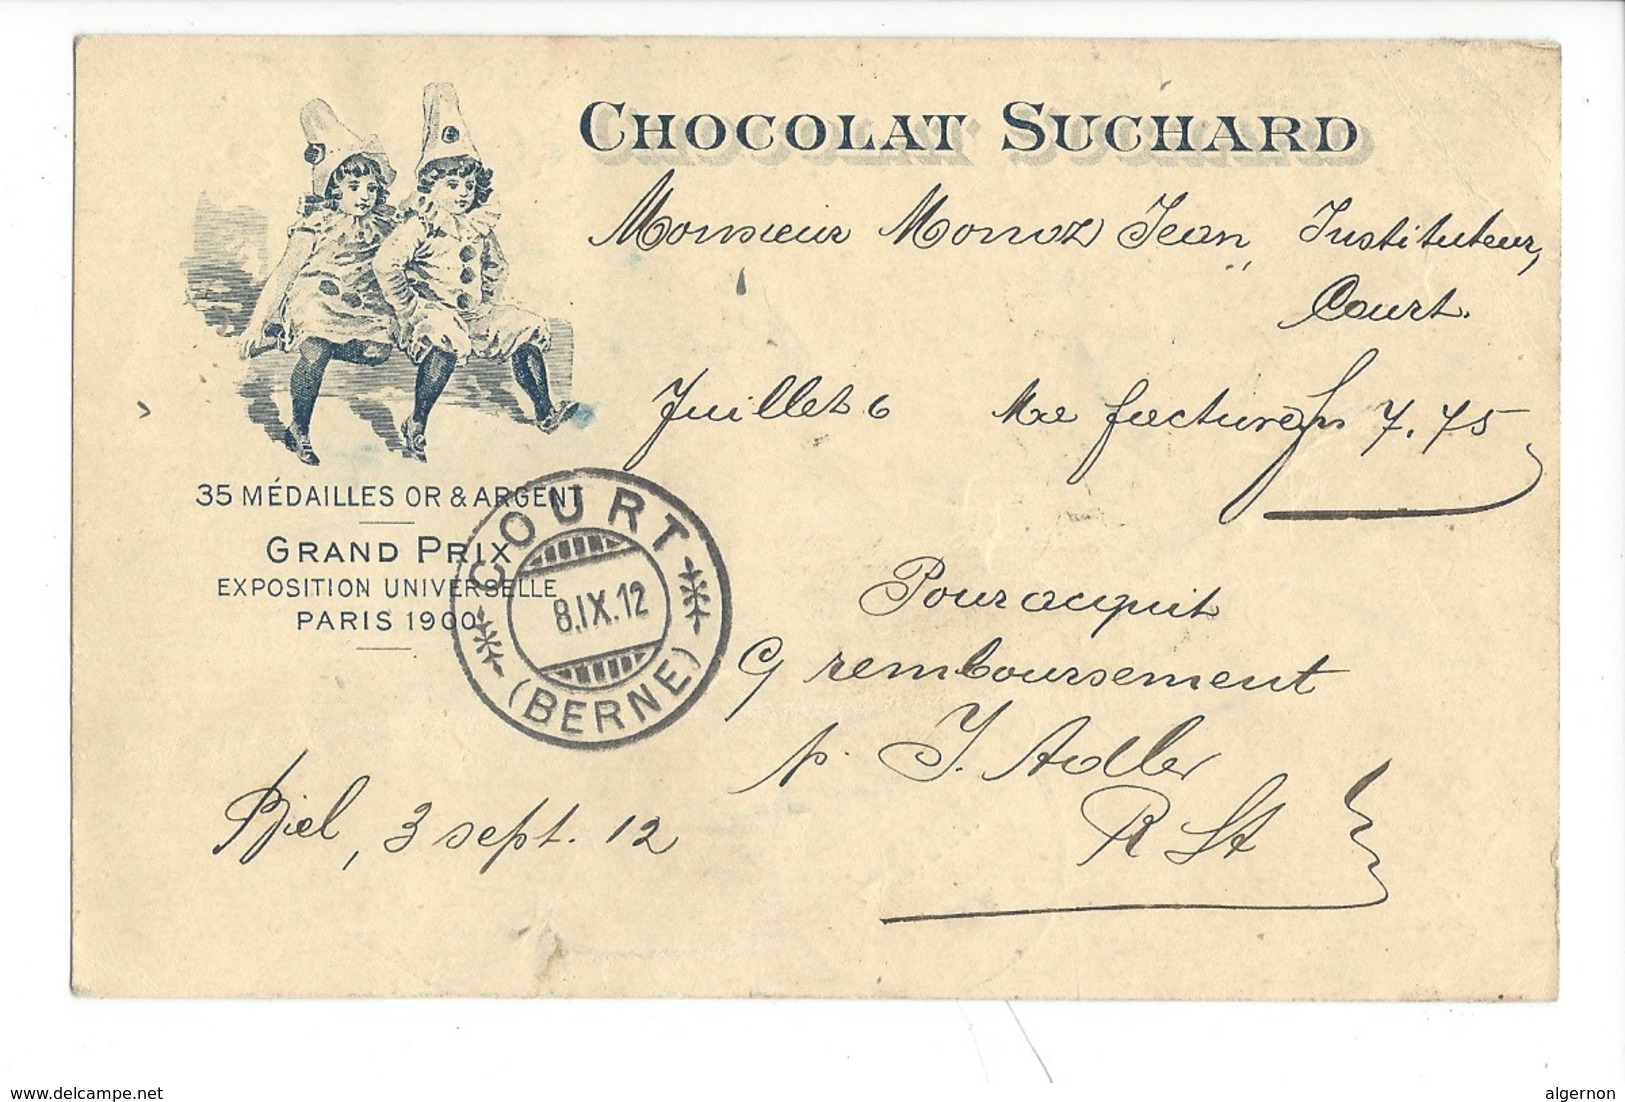 21072 -  Chocolat Suchard Grand Prix Exposition Universelle Paris 1900  Clowns  + Cachet Court 08.09.1912 Remboursement - Publicité